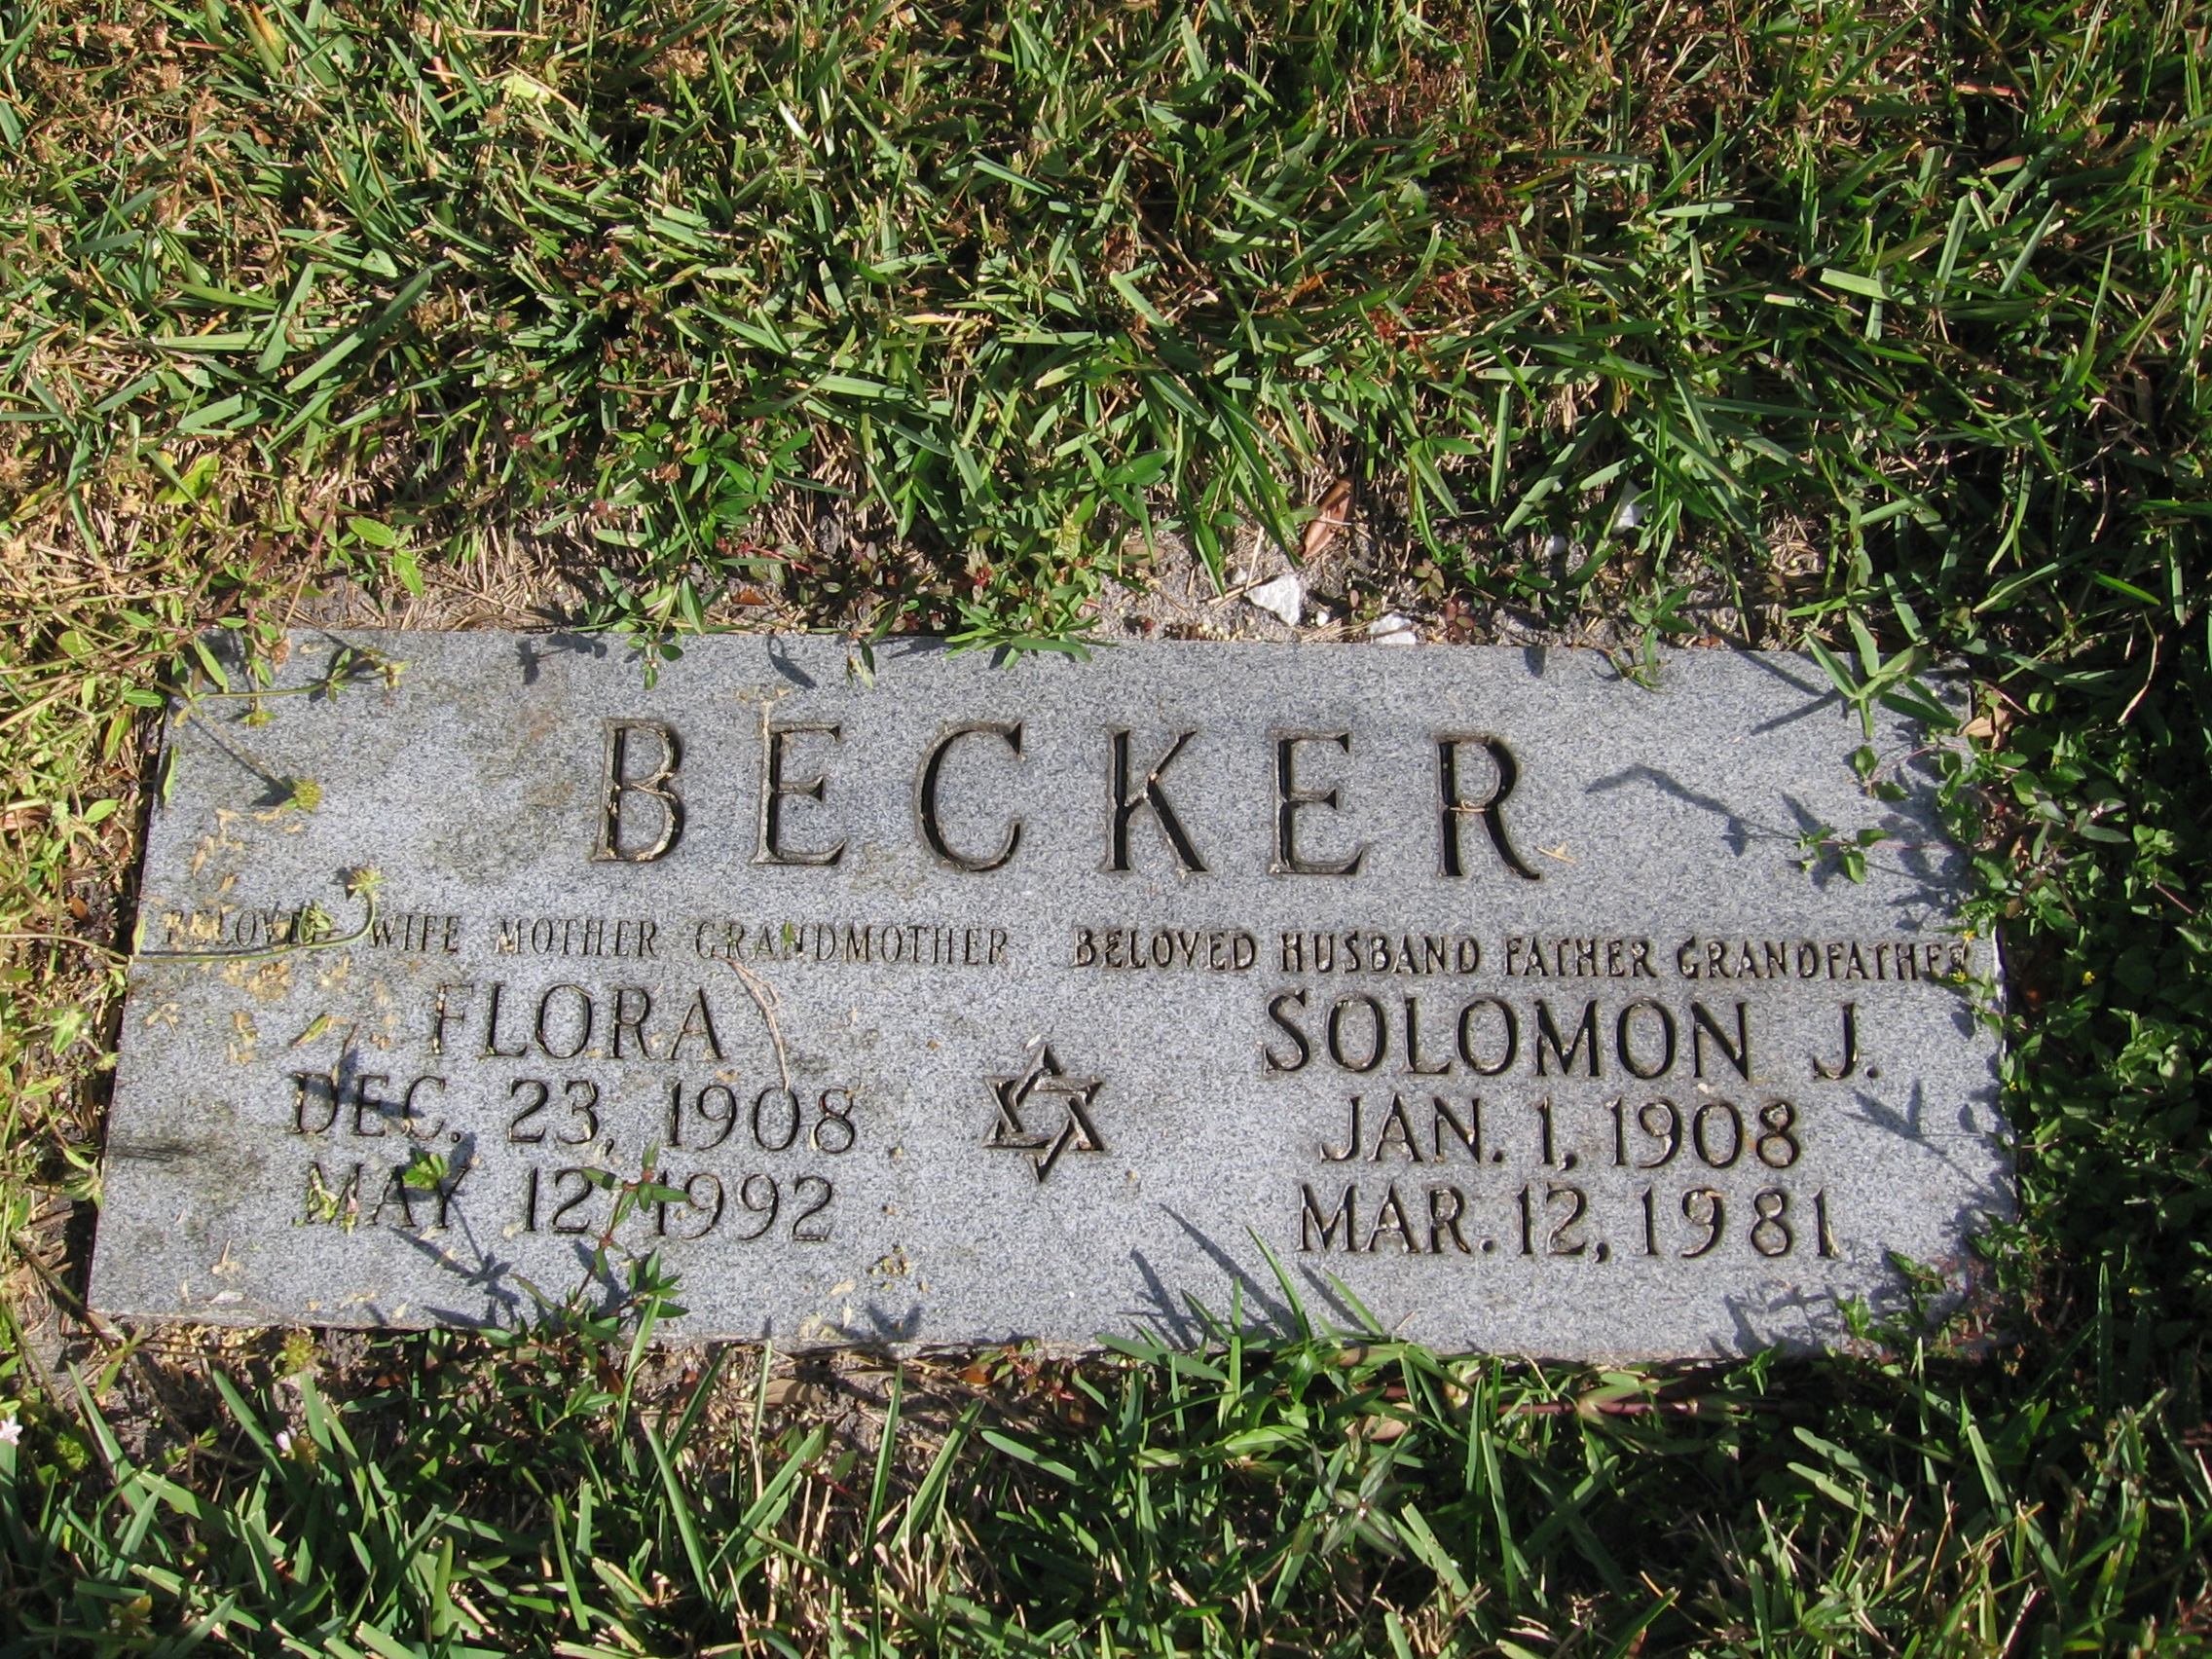 Flora Becker